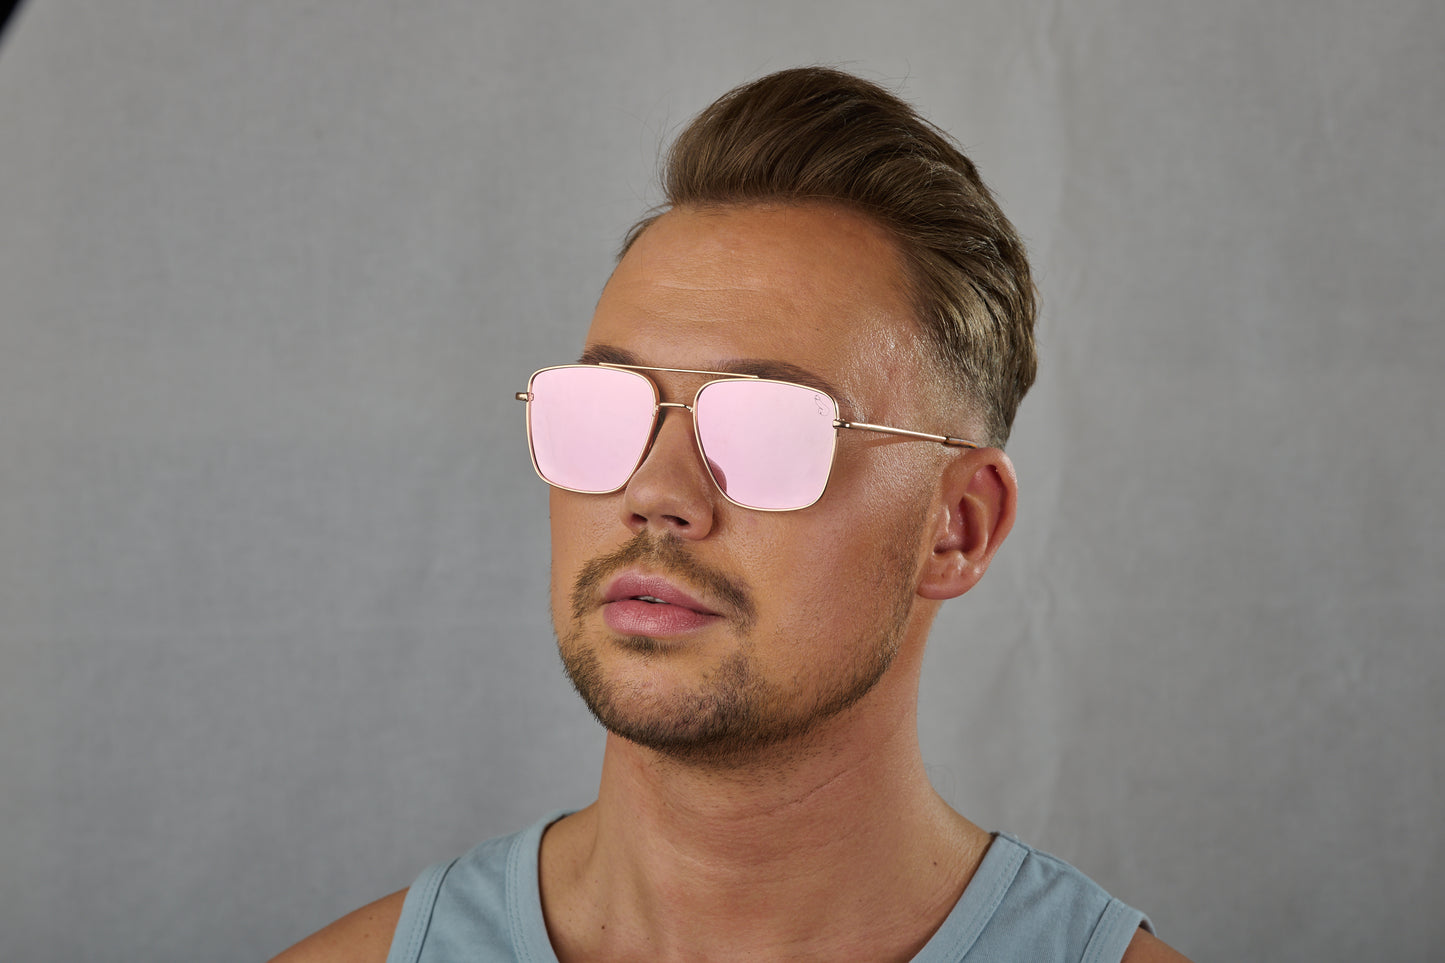 Sonnenbrille mit rosa polarisierten Spiegelgläsern. Nr. 34